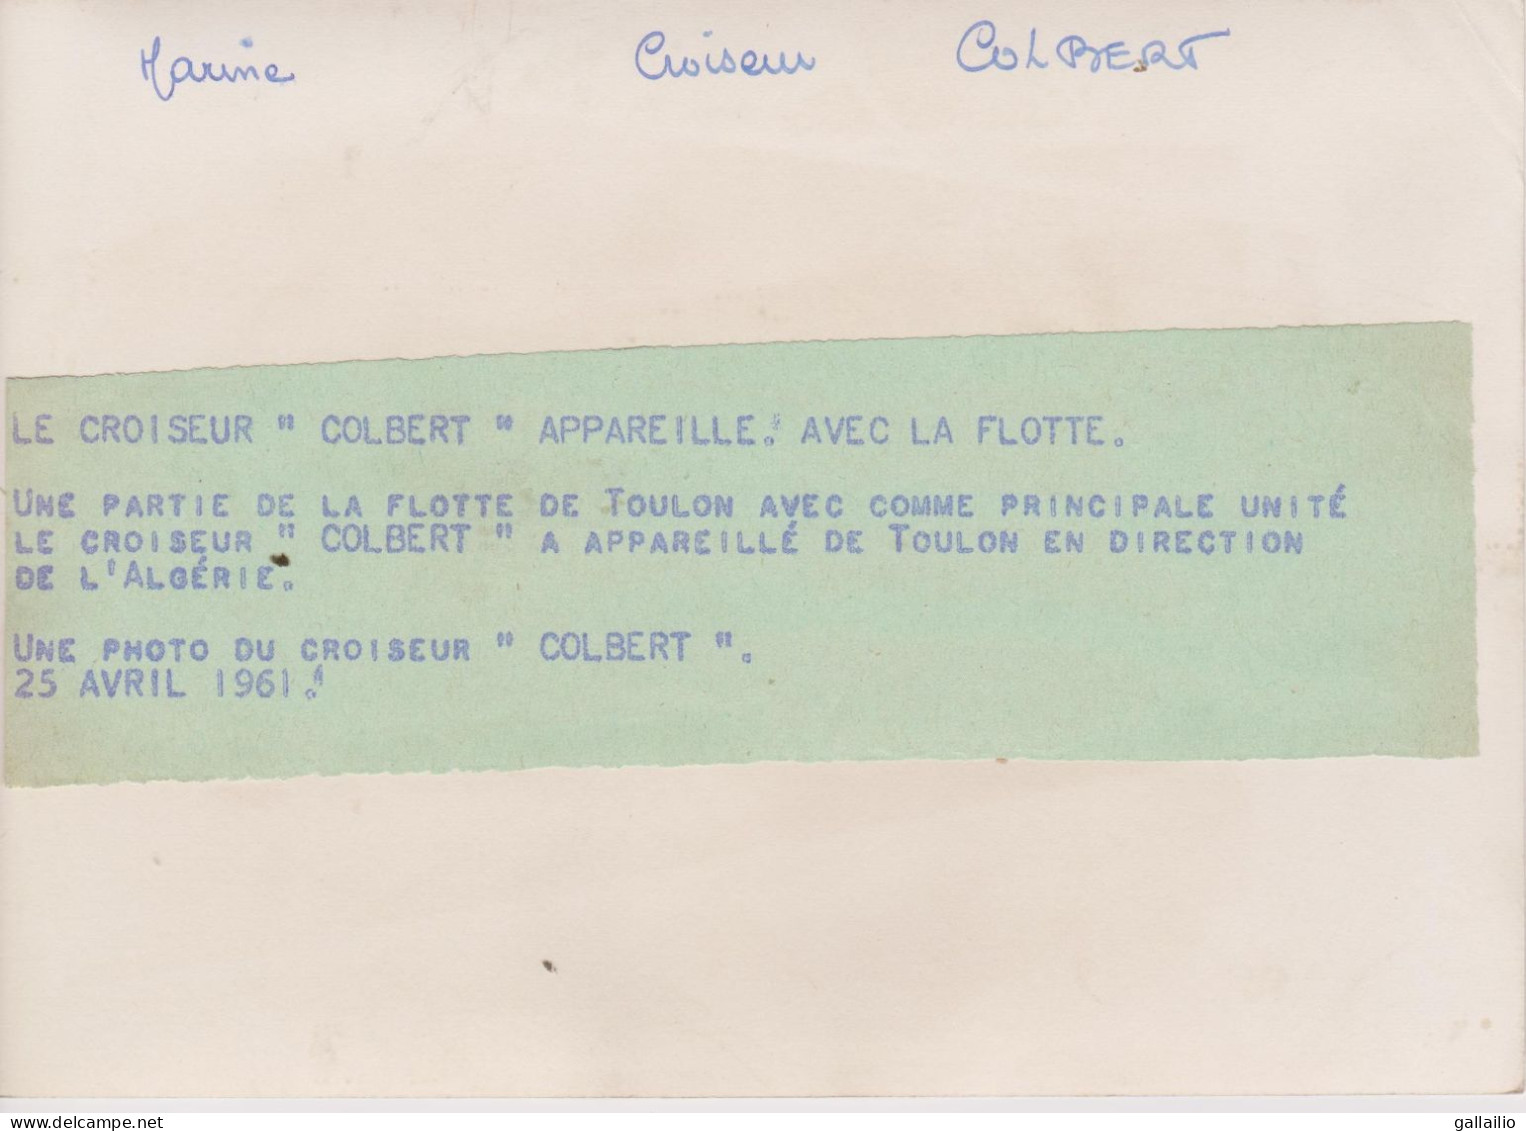 PHOTO PRESSE LE CROISEUR COLBERT EN DIRECTION DE L'ALGERIE AVRIL 1961 FORMAT 18 X 13   CMS - Schiffe